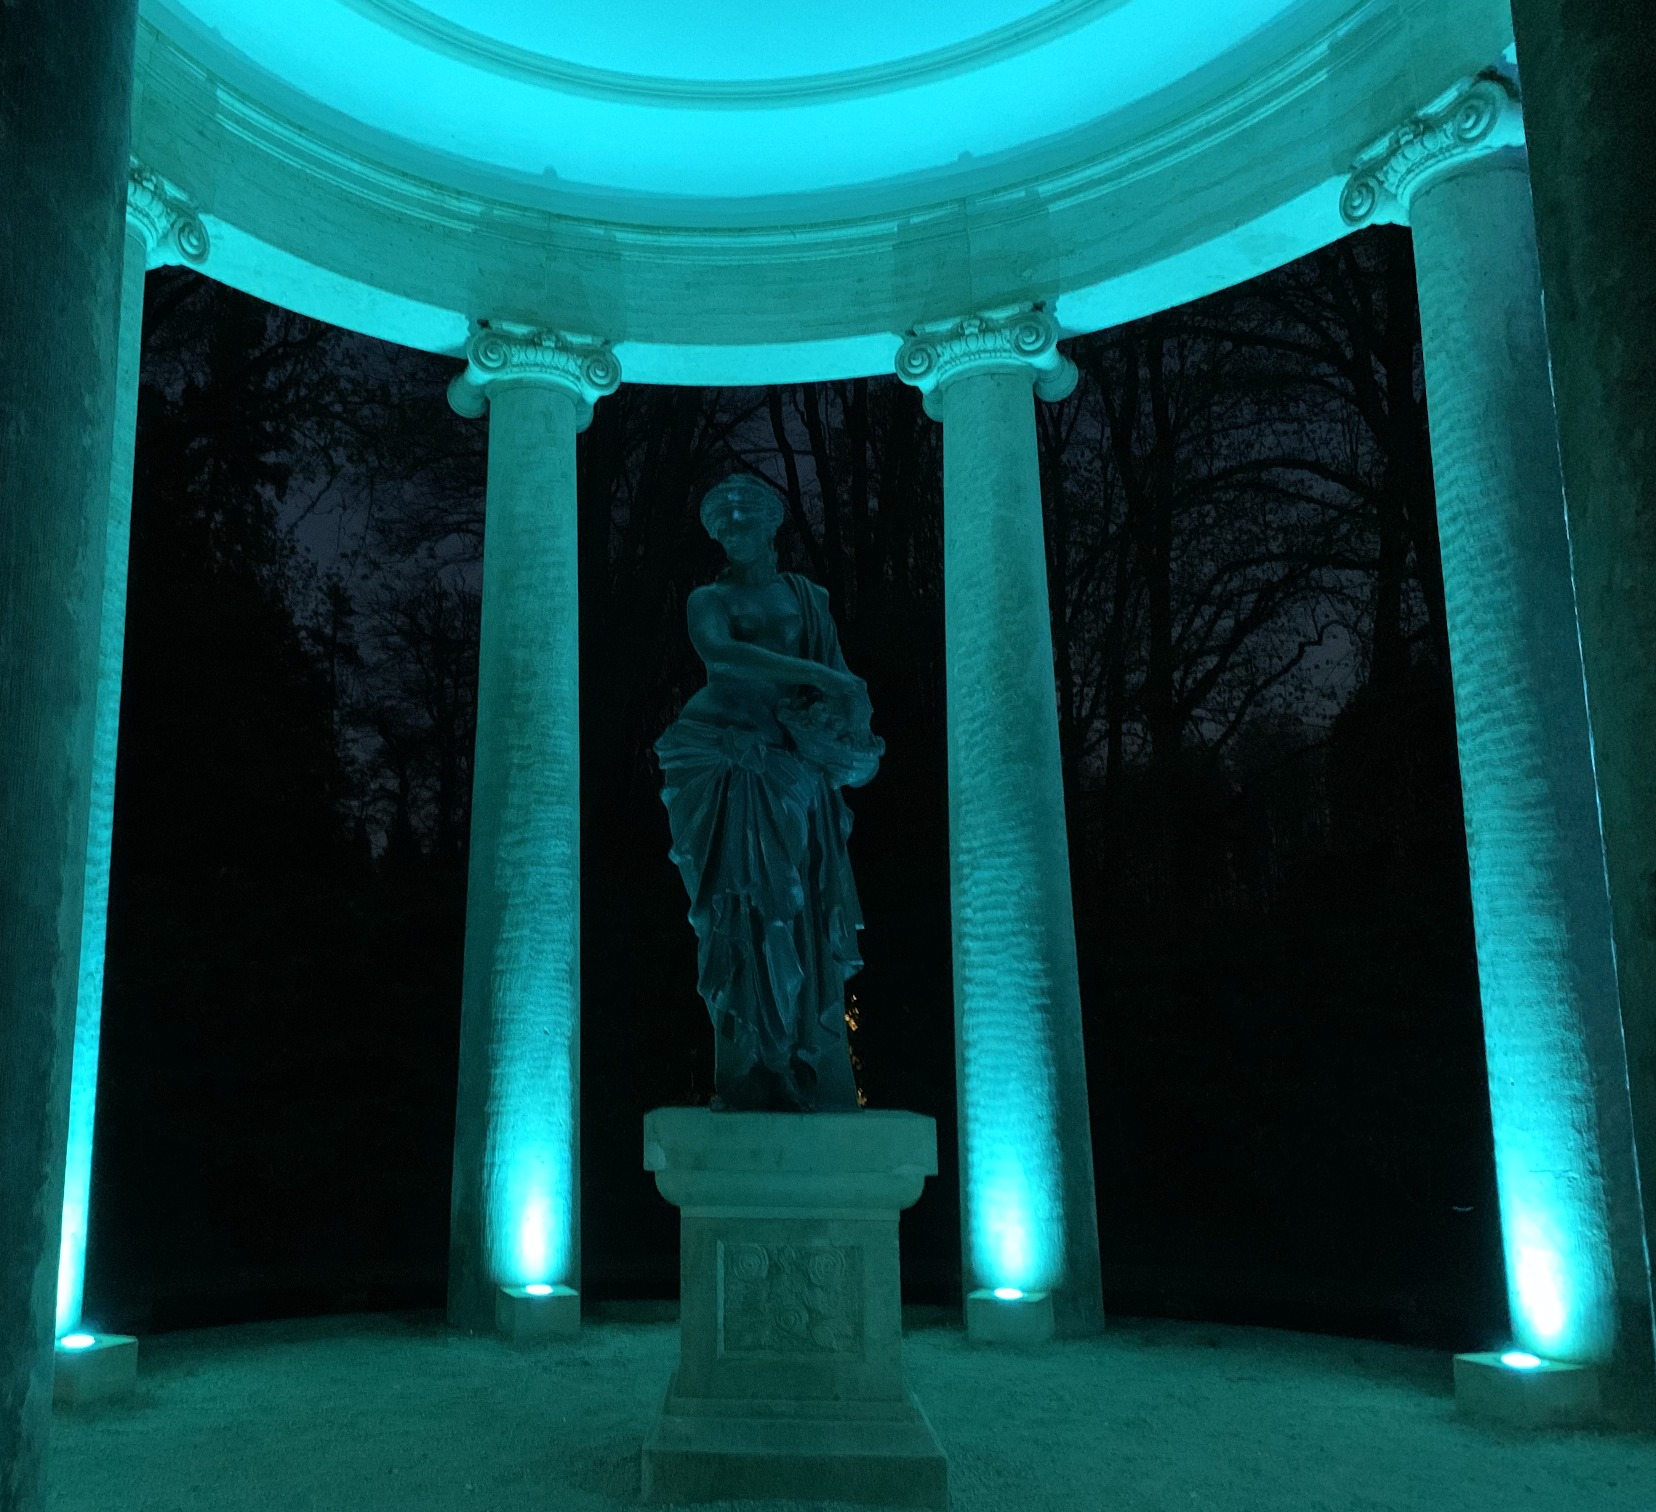 Statue türkisblau angeleuchtet vor Säulen. Dahinter die Nacht.